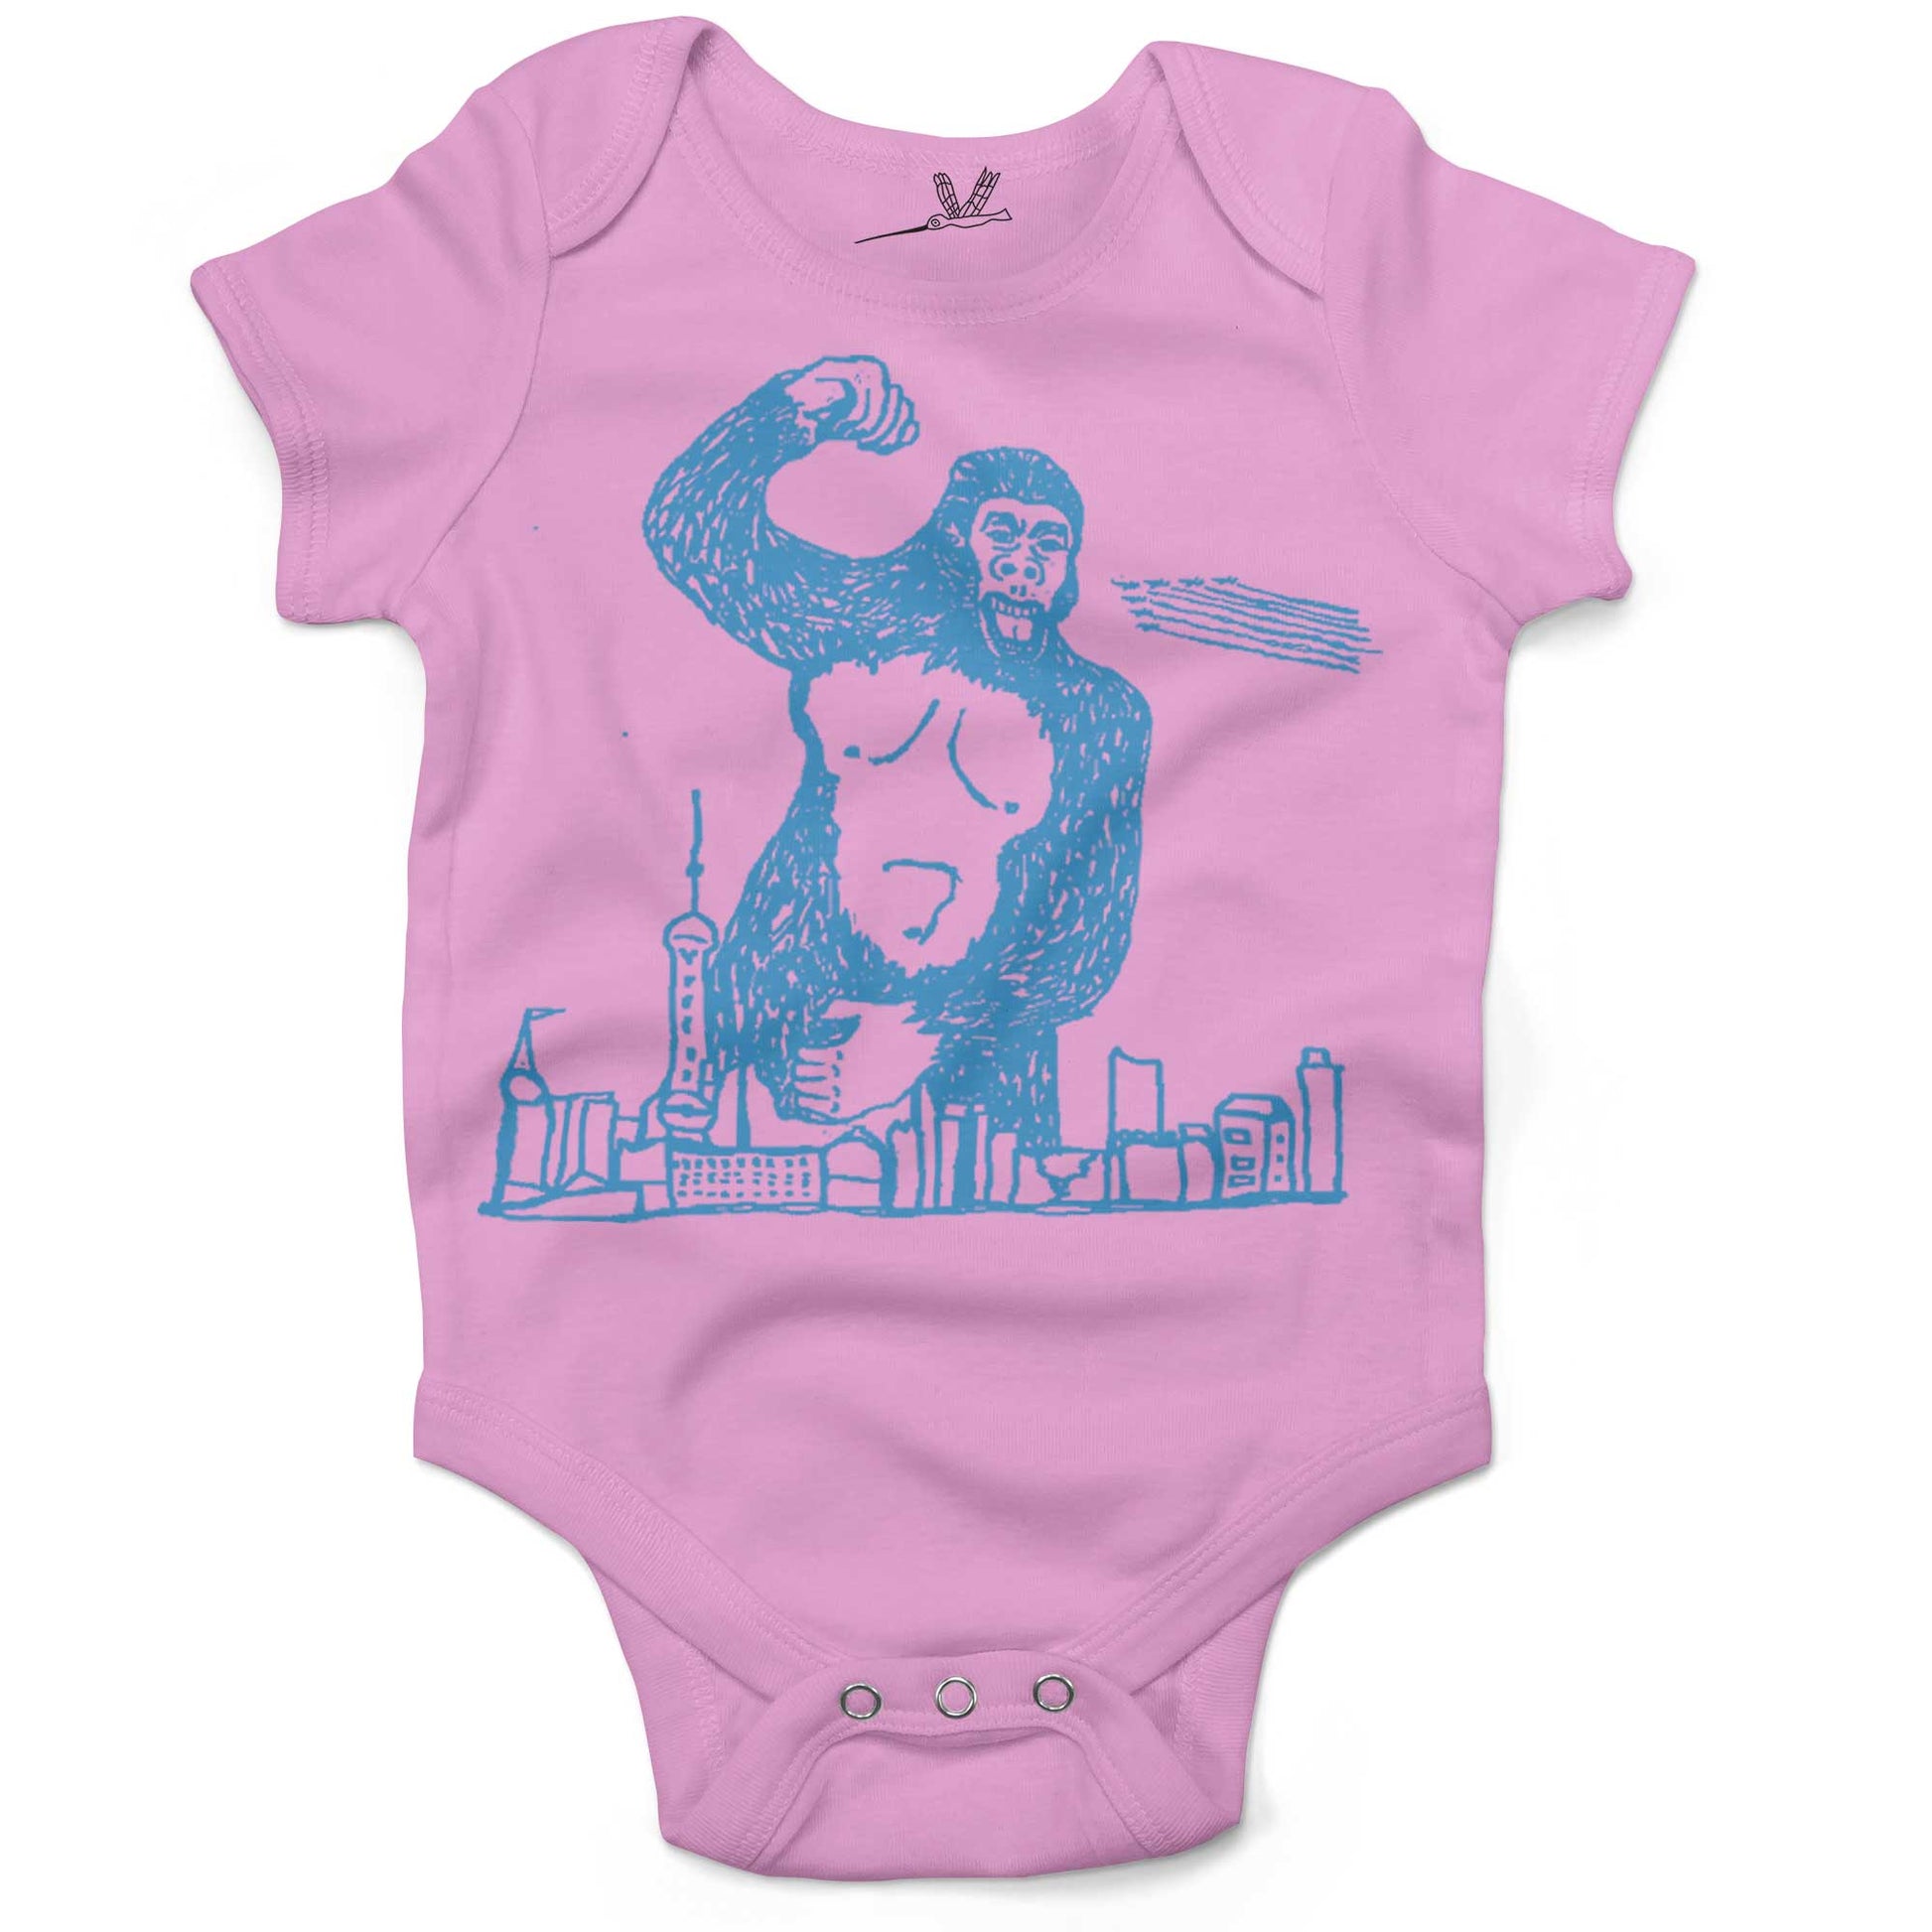 Giant Gorilla Drawing Infant Bodysuit or Raglan Tee-Organic Pink-3-6 months